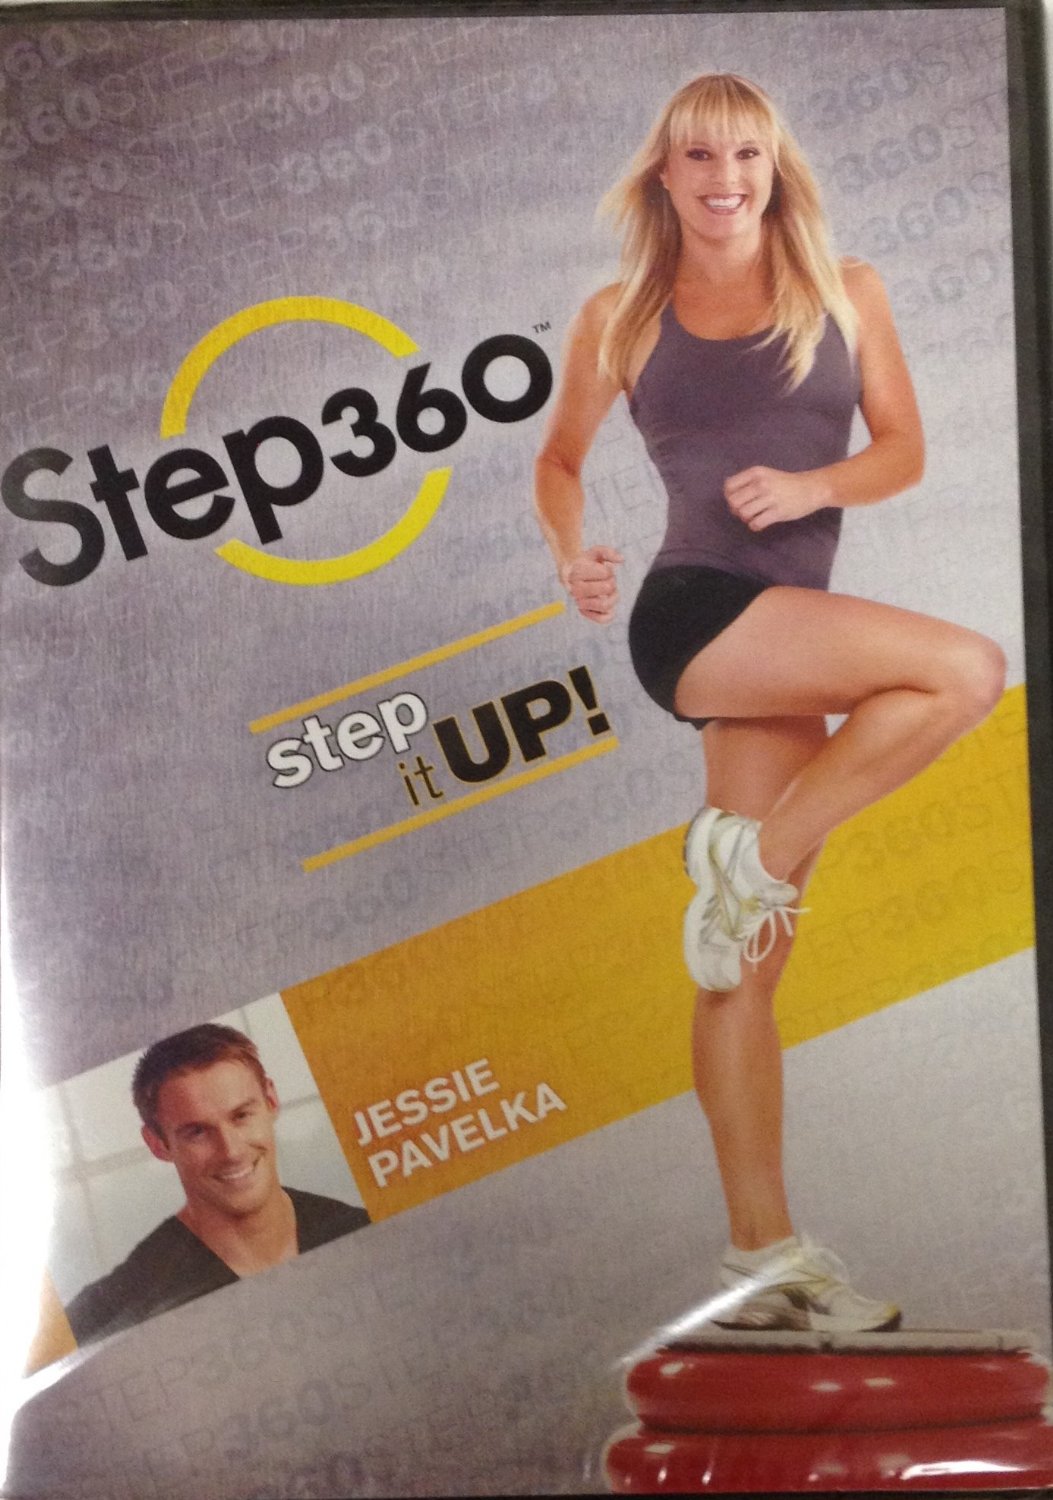 STEP360 / STEP UP! Jessie Pavelka [DVD] [2010]